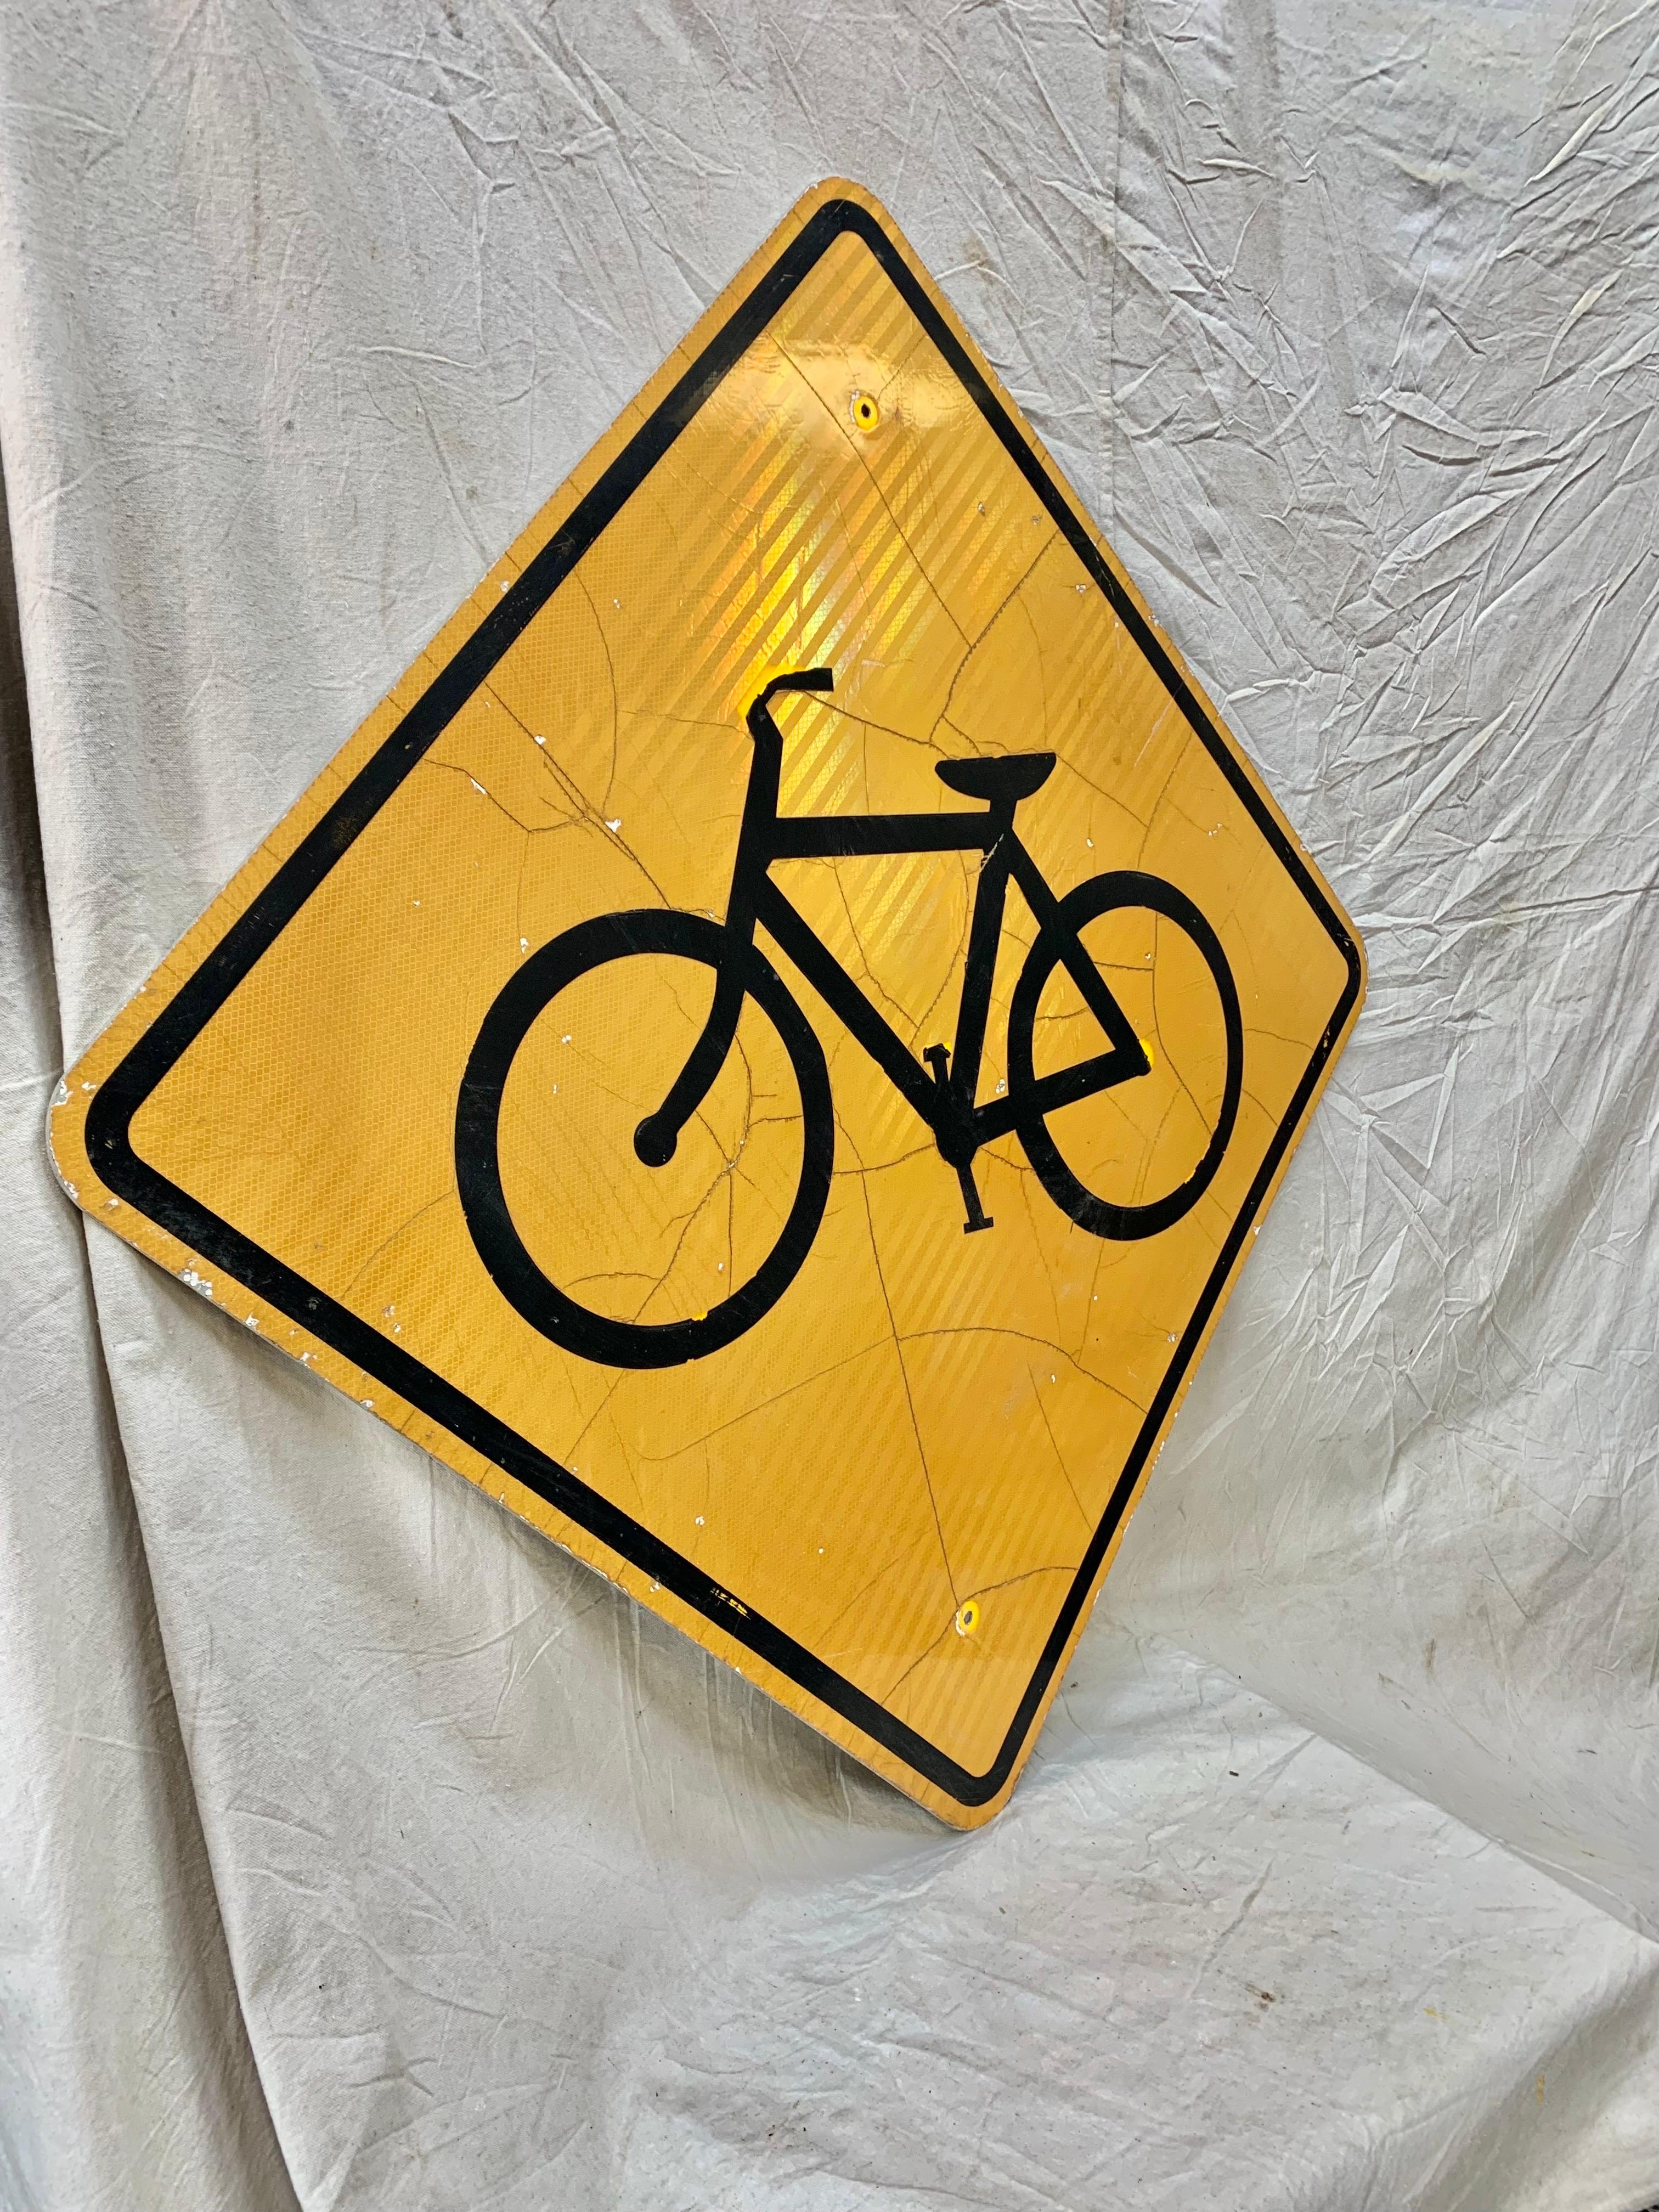 Dieses reflektierende Straßenschild im Vintage-Stil zeigt ein schwarzes Fahrrad auf gelbem Hintergrund. Dieses Schild wurde einst als Straßenschild verwendet, um die Autofahrer auf die Radfahrer in der Gegend aufmerksam zu machen, und weist eine